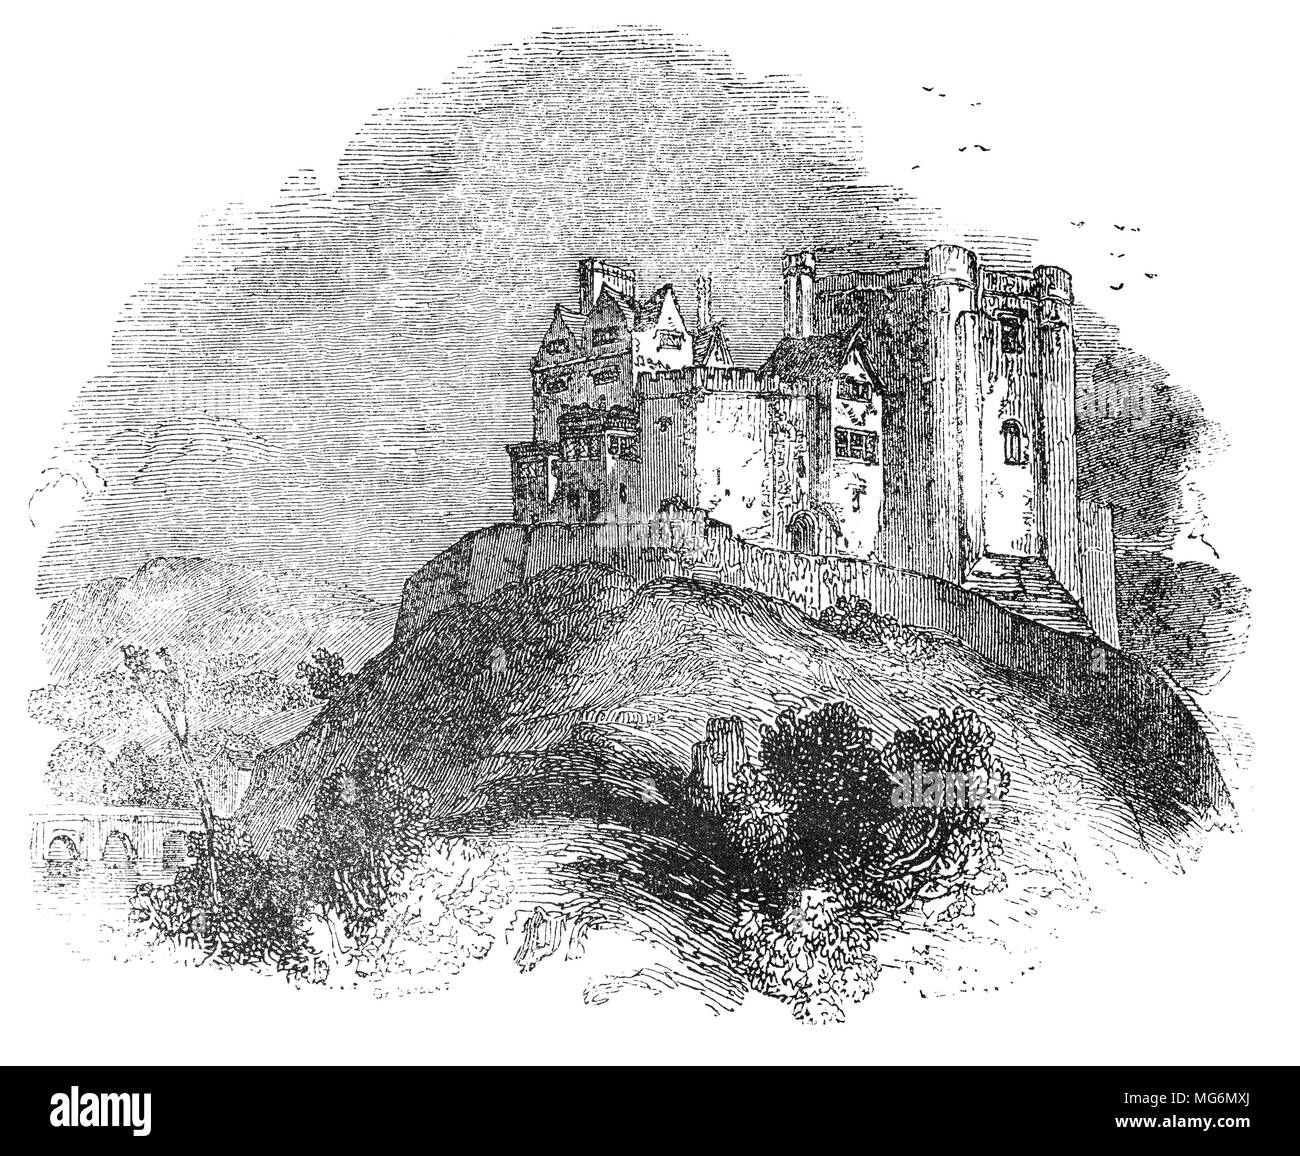 12ème siècle château de Tamworth, un bâtiment classé, est un château normand, surplombant le confluent de la rivière Anker et la rivière Tame, dans la ville de Tamworth, dans le Staffordshire, en Angleterre. Une fresque Arthurienne, a été peint pendant la seigneurie de Sir Thomas Ferrers, qui a été anobli en 1461. Le duel entre Lancelot et Tarquin a été mentionné dans le Sir Thomas Malory "Morte d'Arthur", imprimé par William Caxton, et publié en 1485, l'année où le roi Richard III a été défait à la bataille de Bosworth Field. Banque D'Images